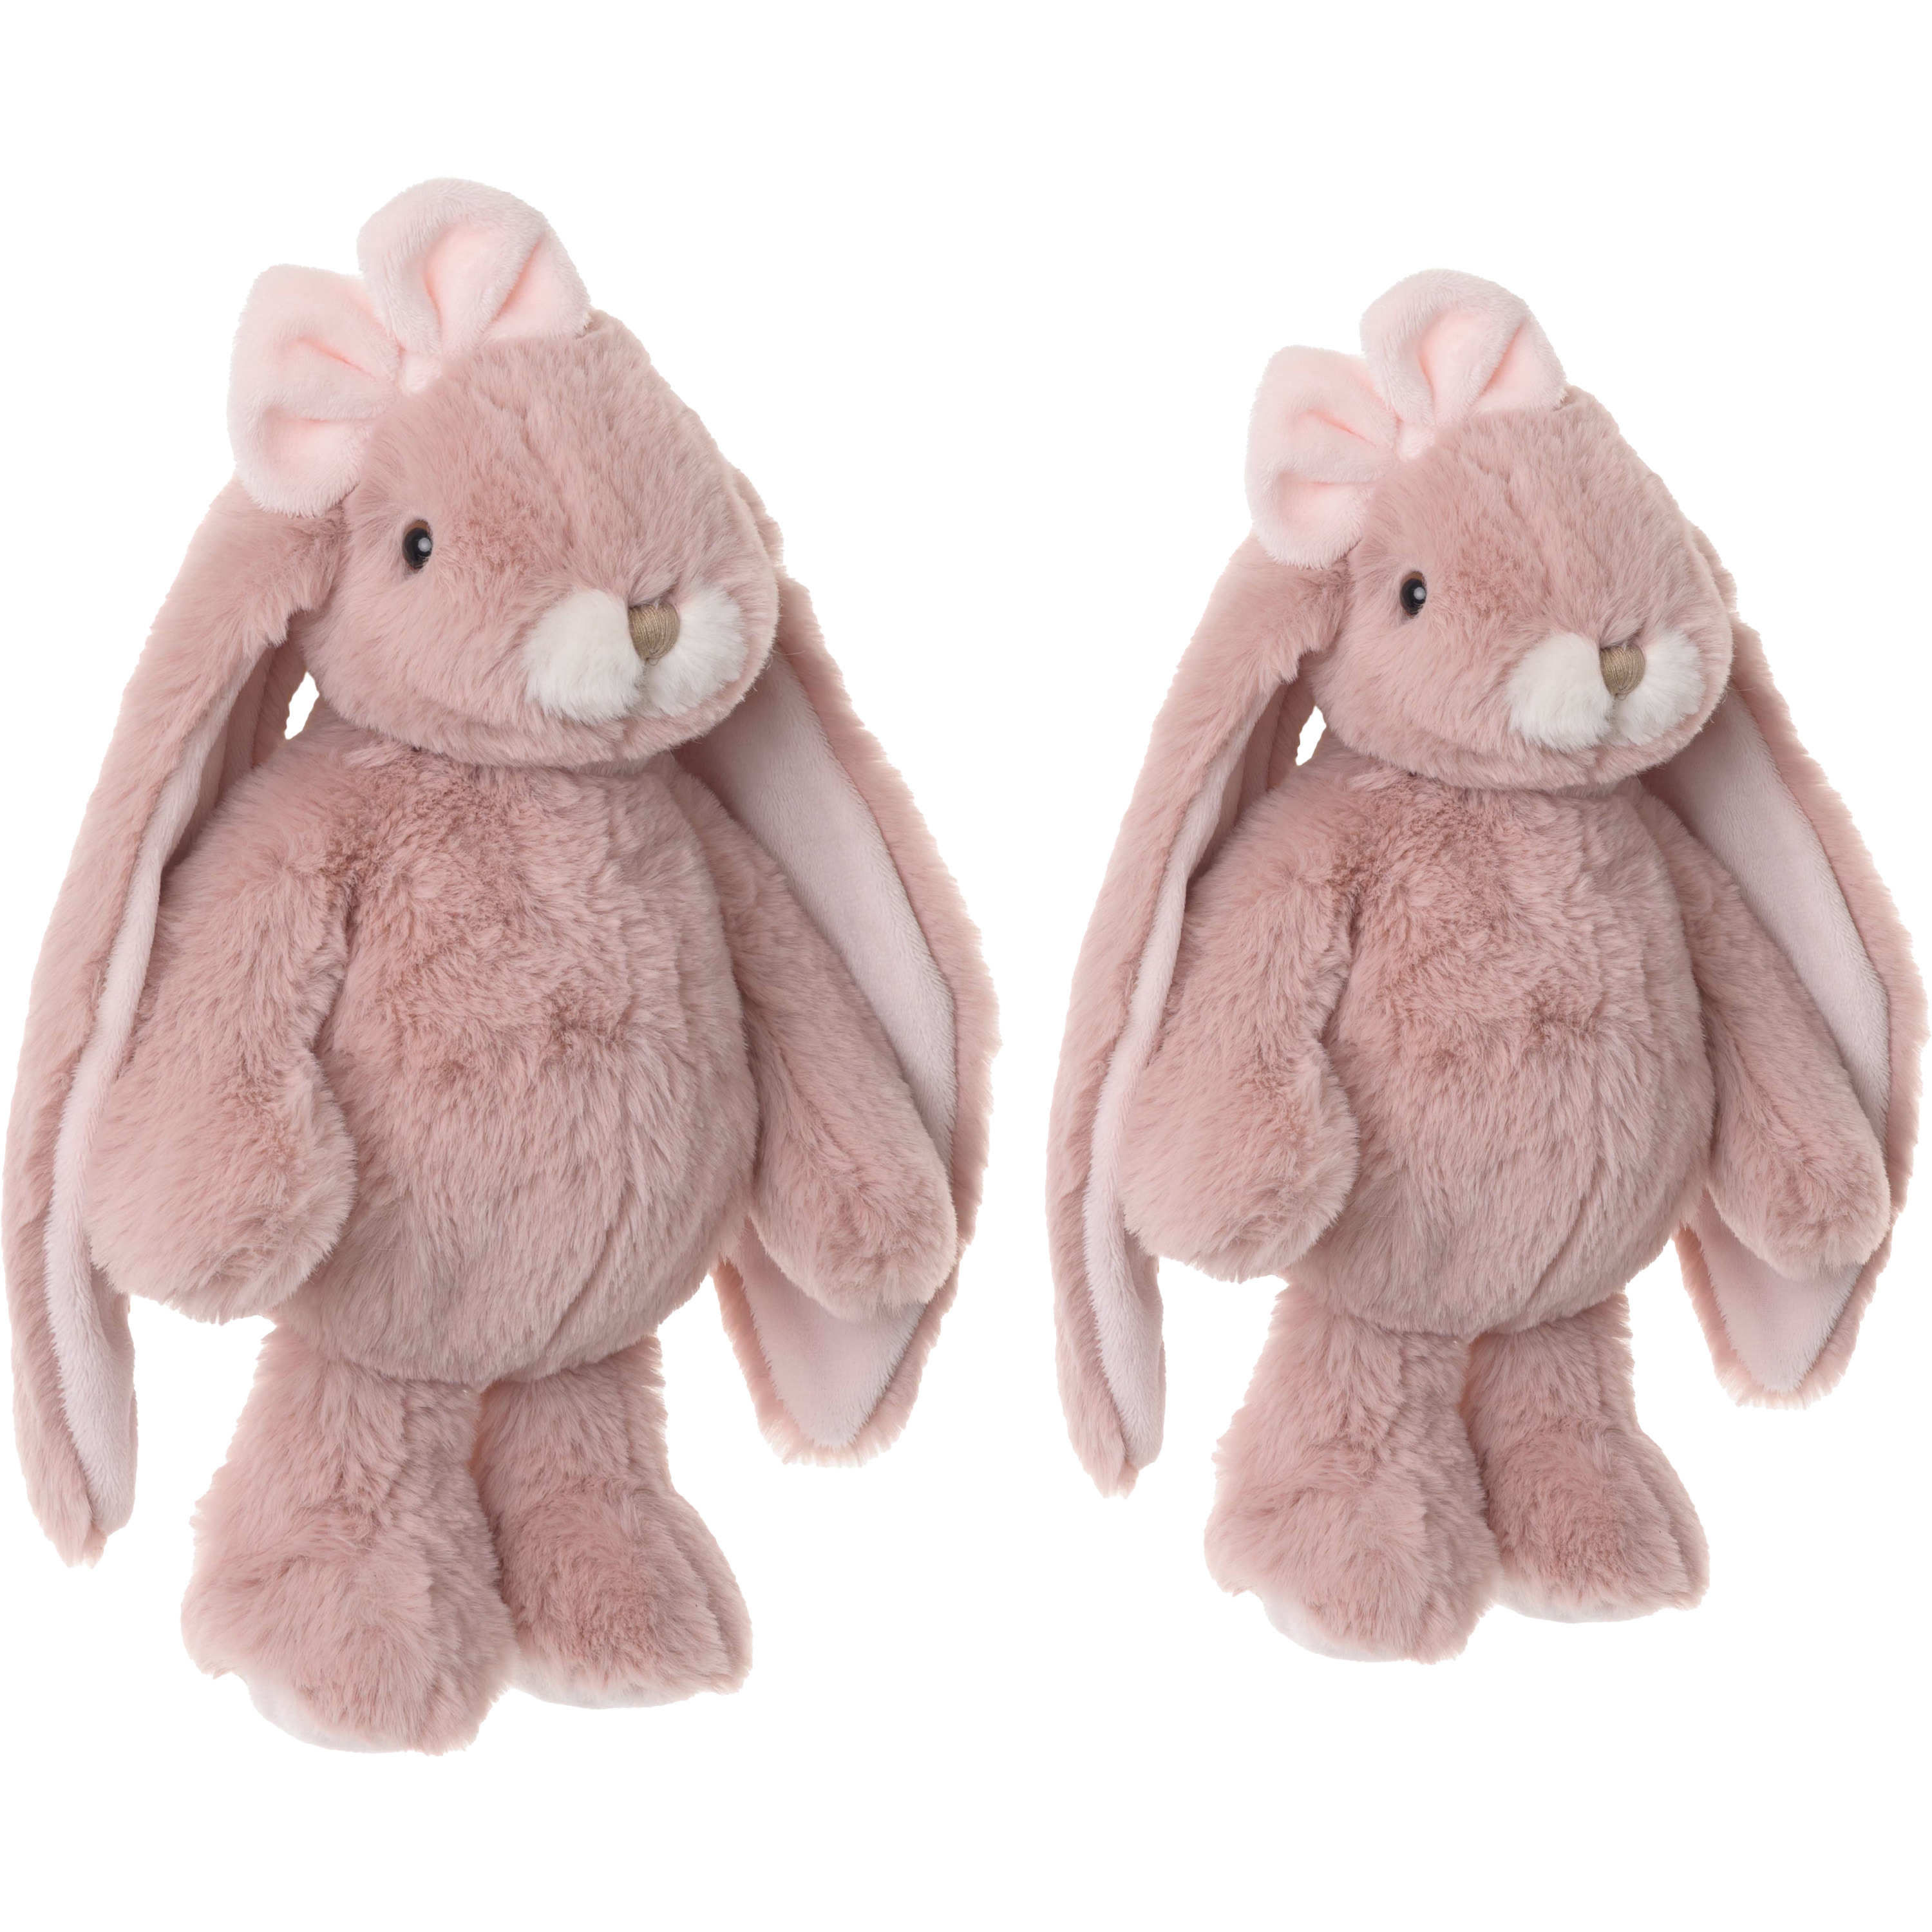 Bukowski pluche knuffel konijnen set 2x stuks oud roze 22 en 30 cm luxe knuffels